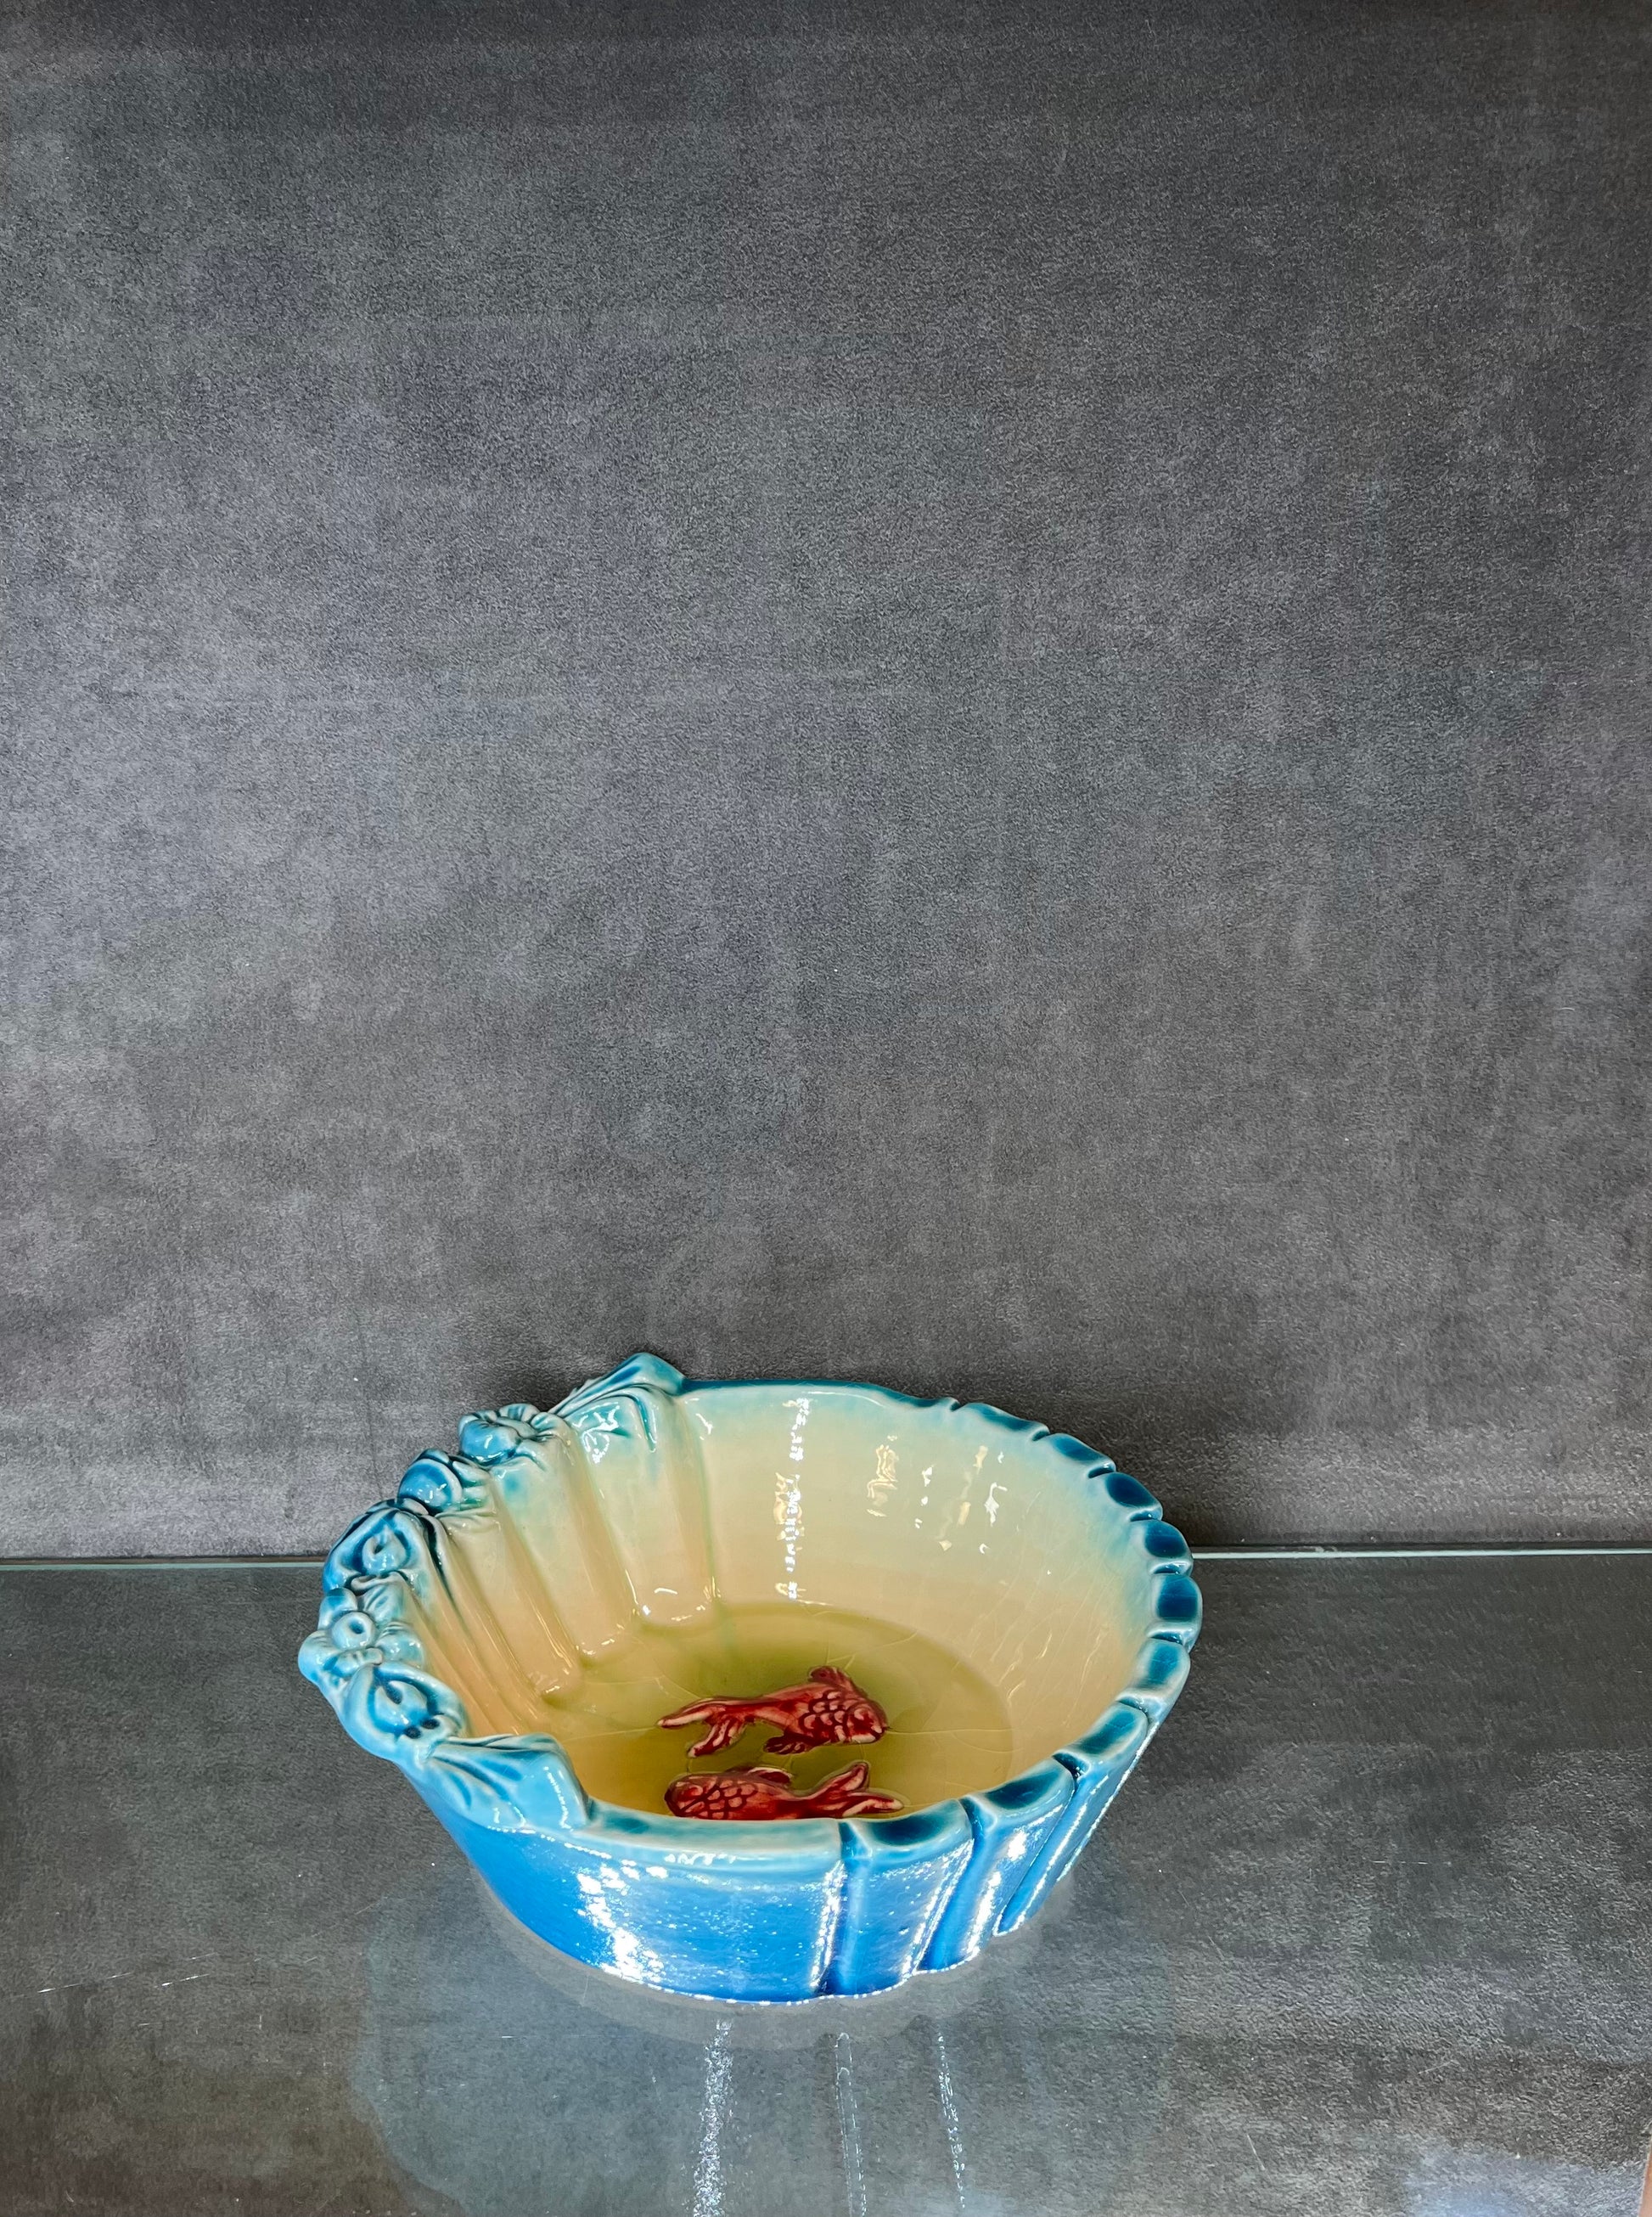 Glazed Blue Fish Bowl Decoration - HighTouch 